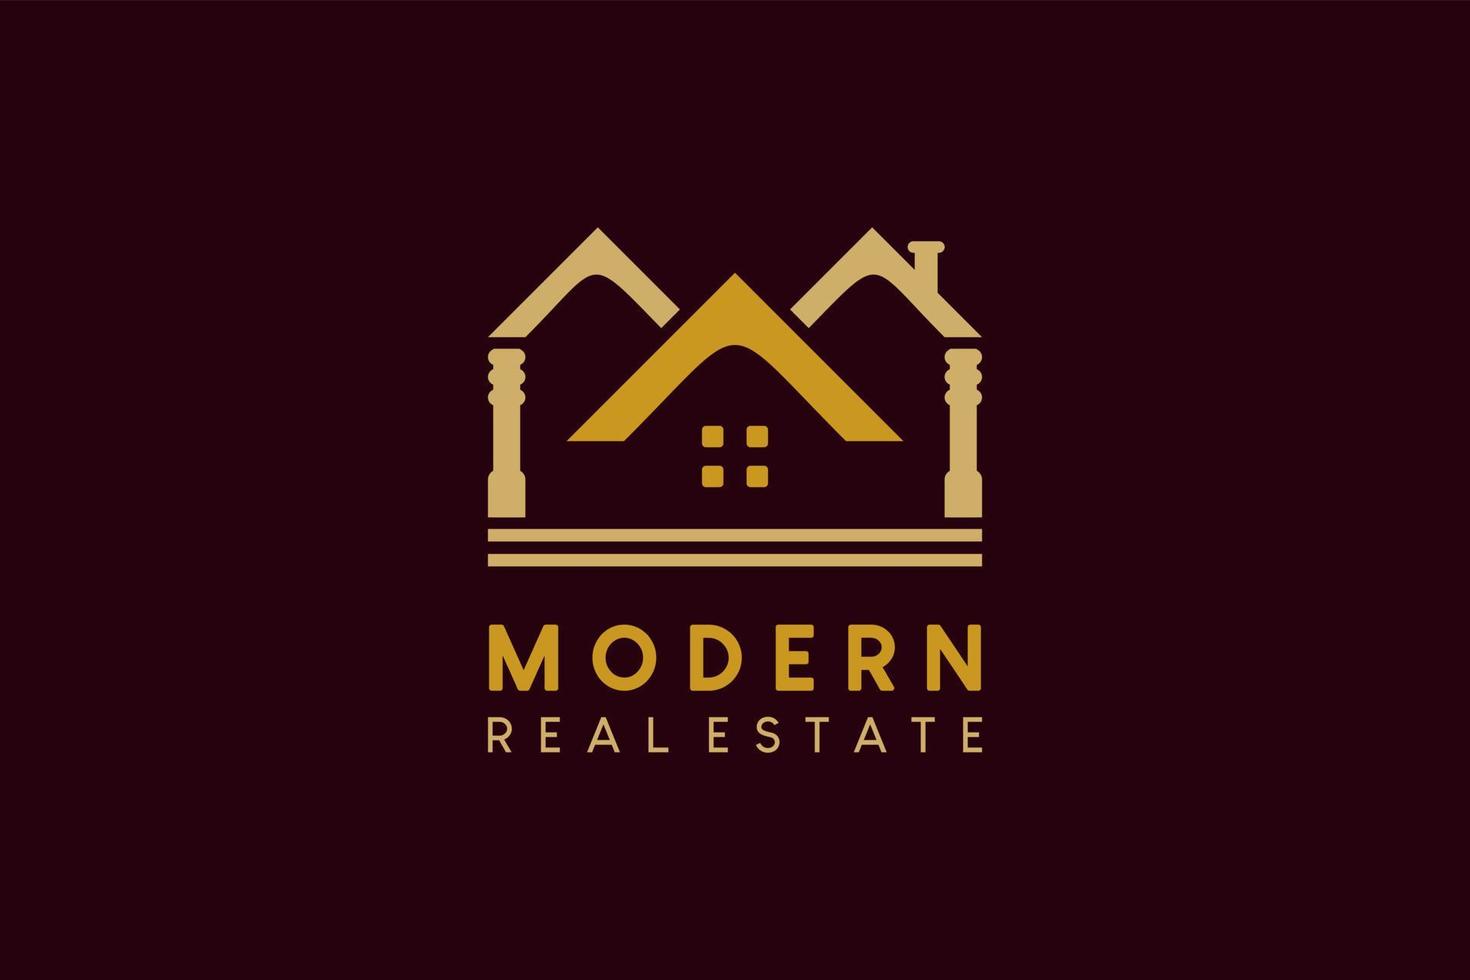 Real estate logo design, modern house and building property logo vector illustration